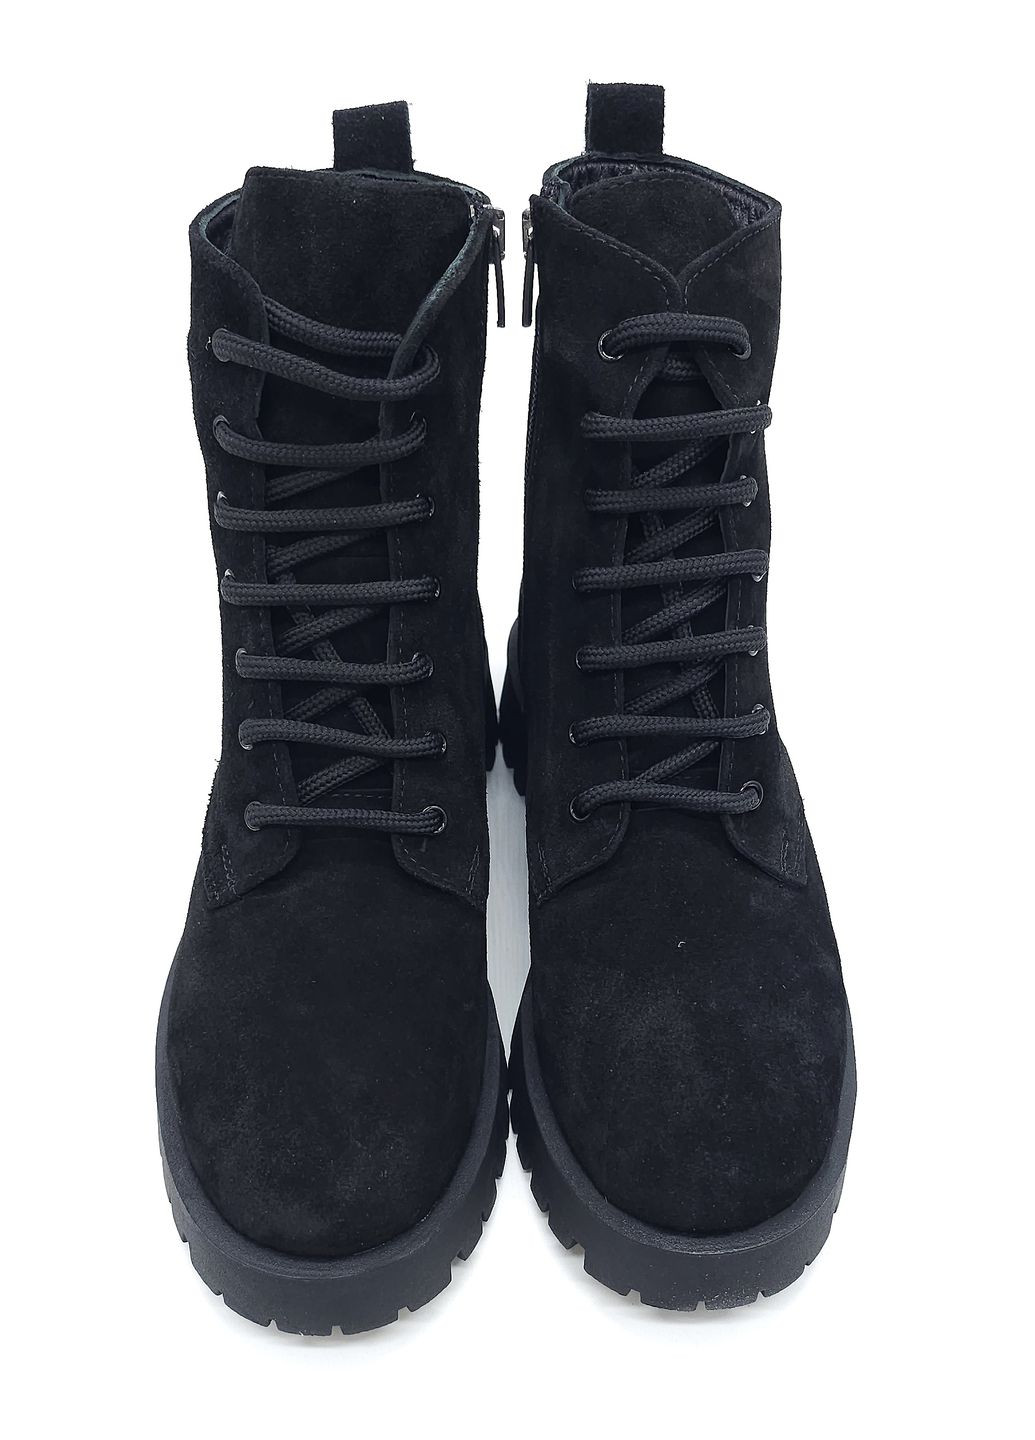 Осенние женские ботинки черные замшевые at-16-8 23 см (р) ALTURA